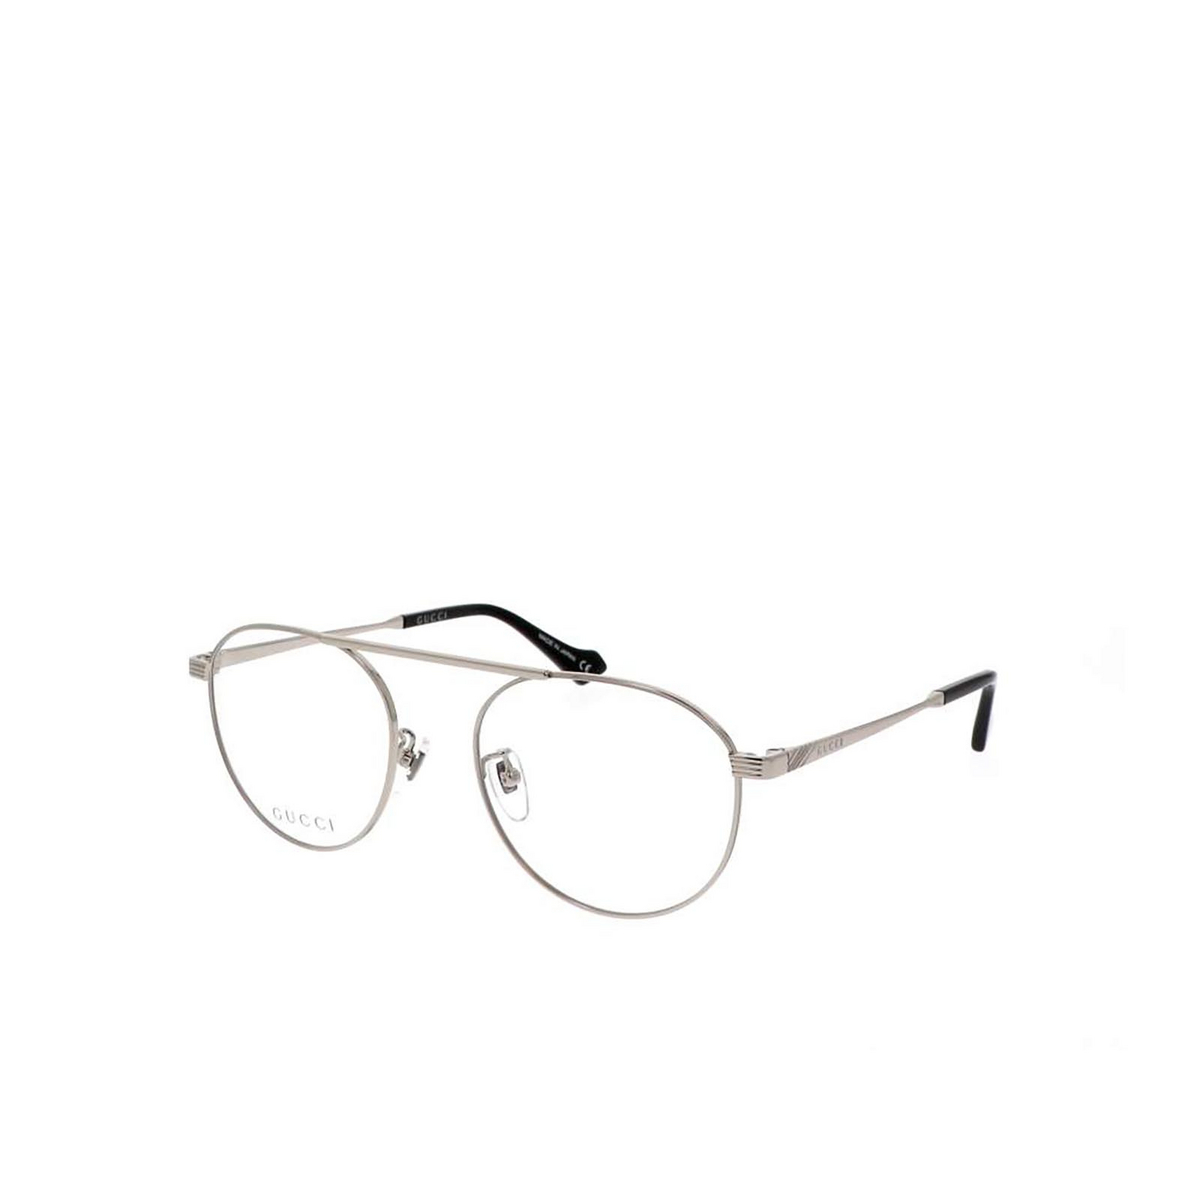 Gucci® Aviator Eyeglasses: GG0744O color Silver 001 - three-quarters view.